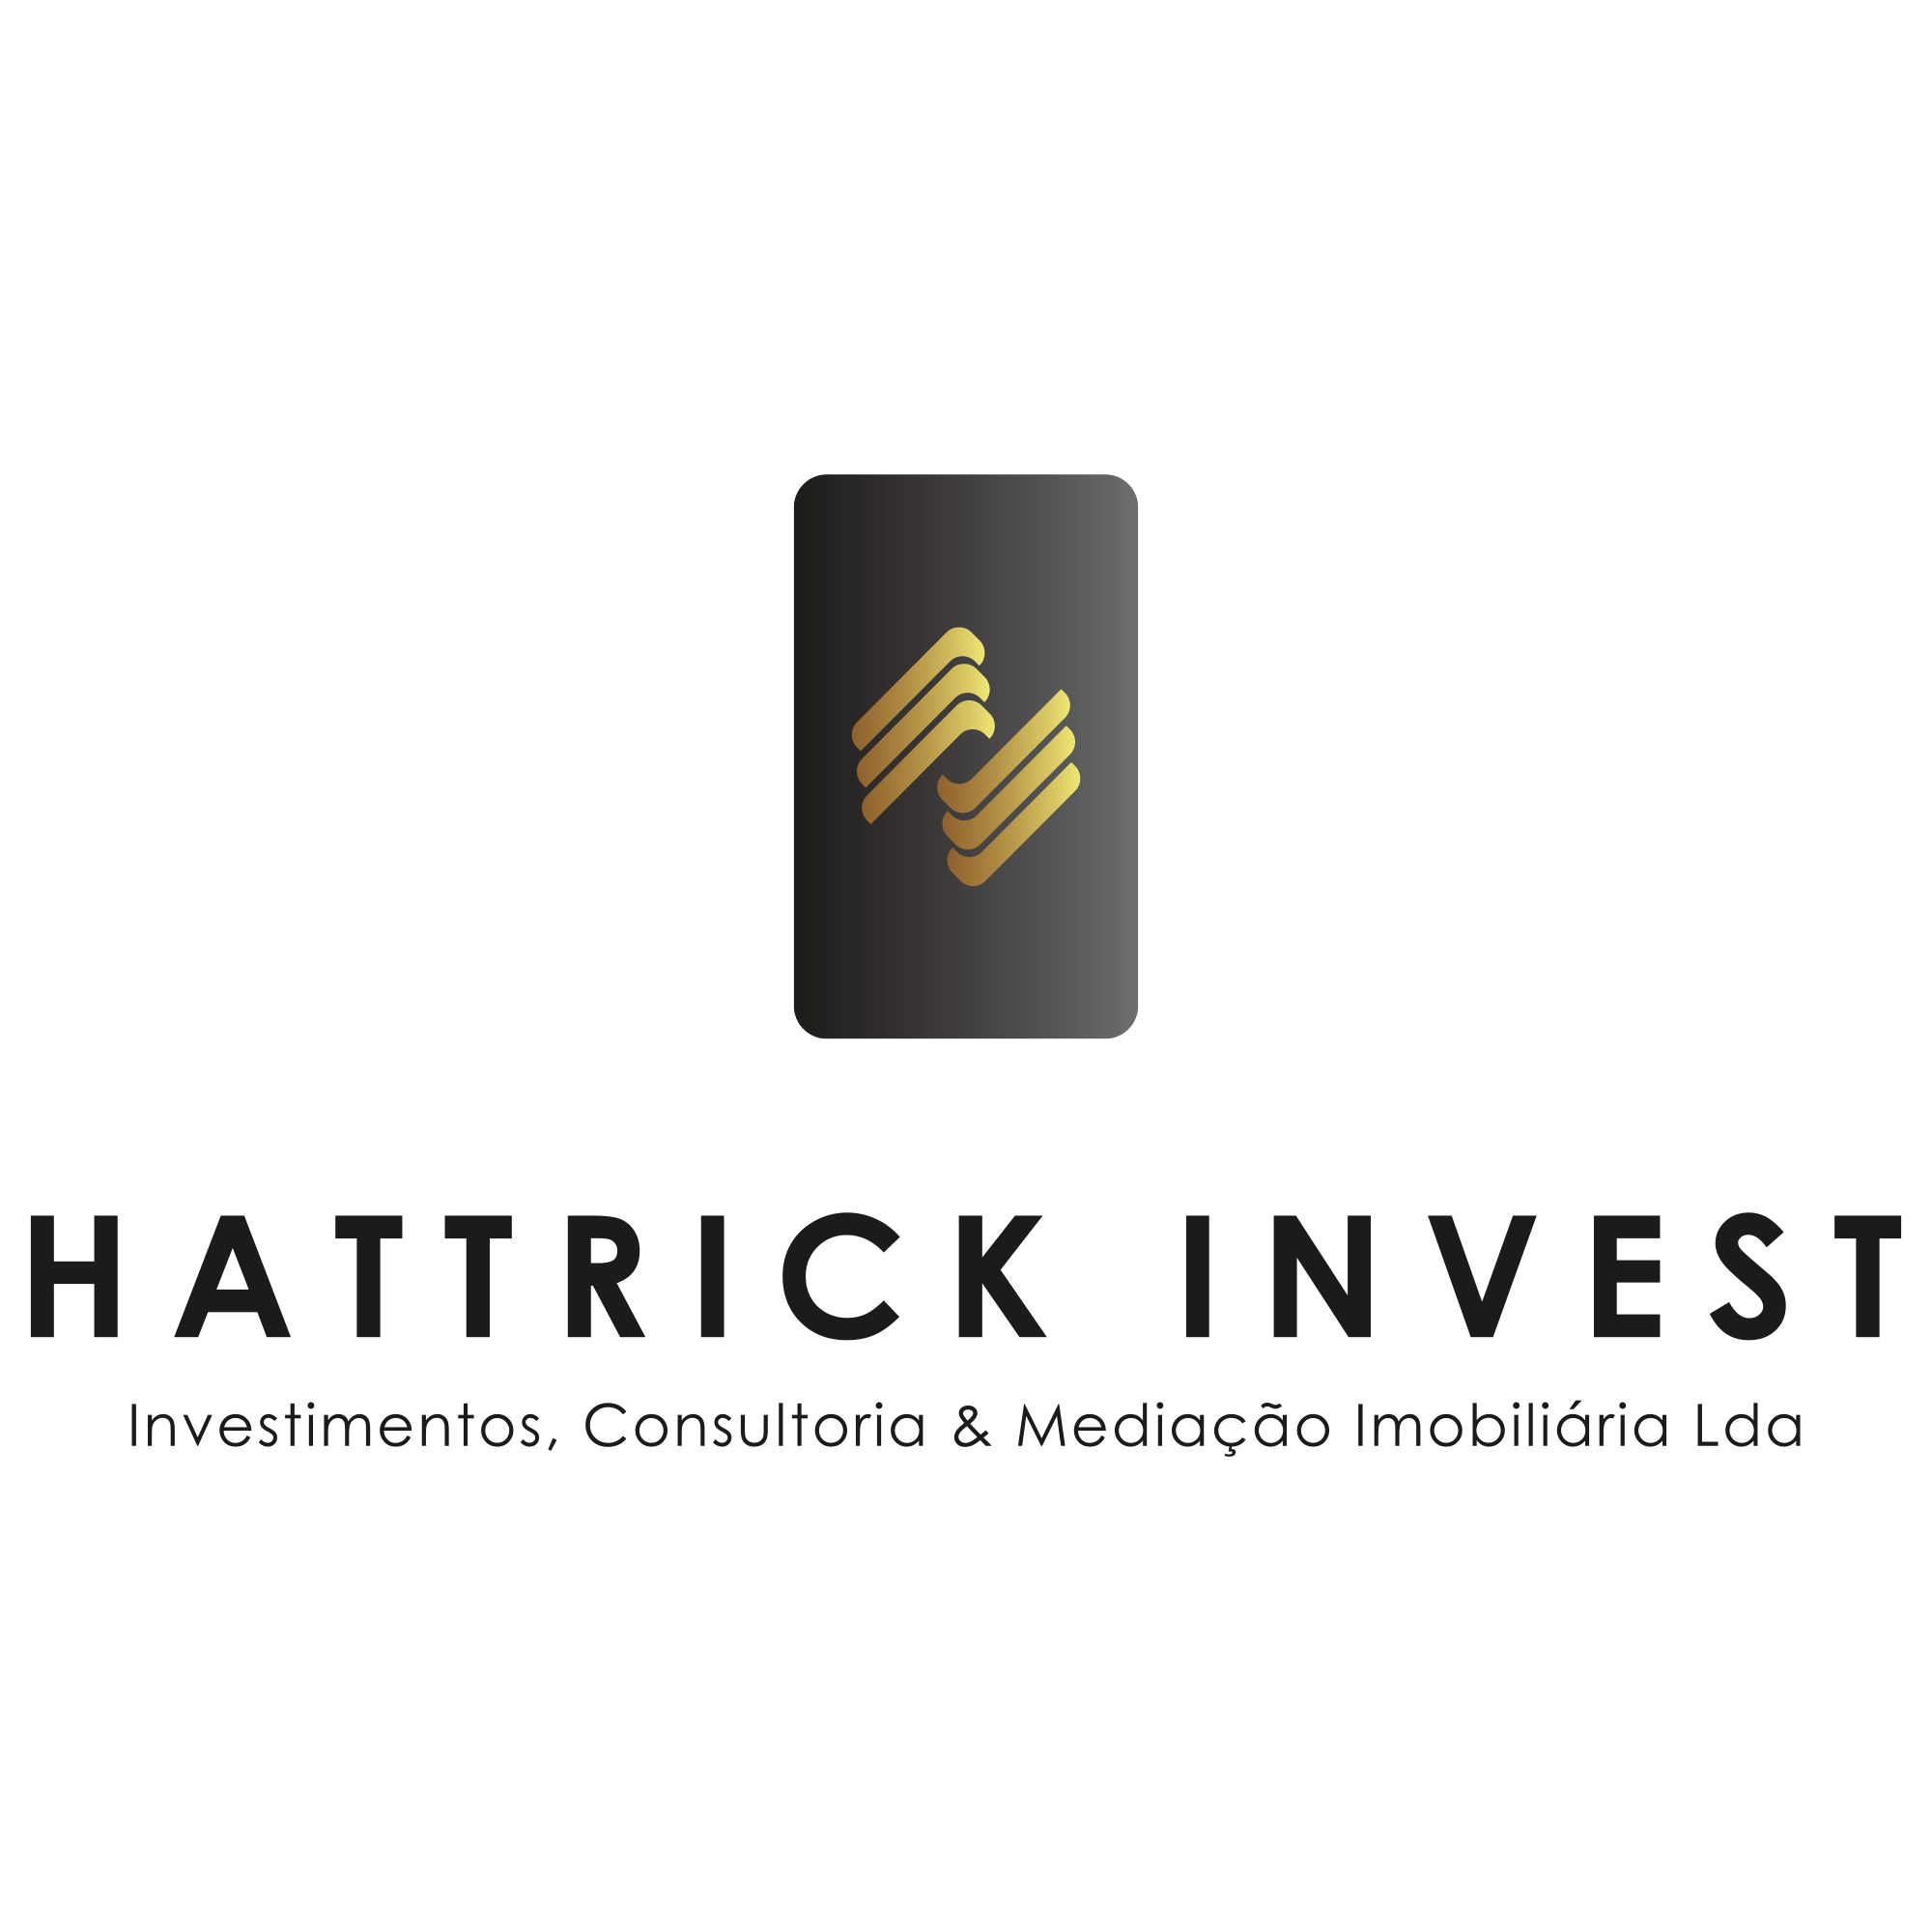 Hattrick Invest